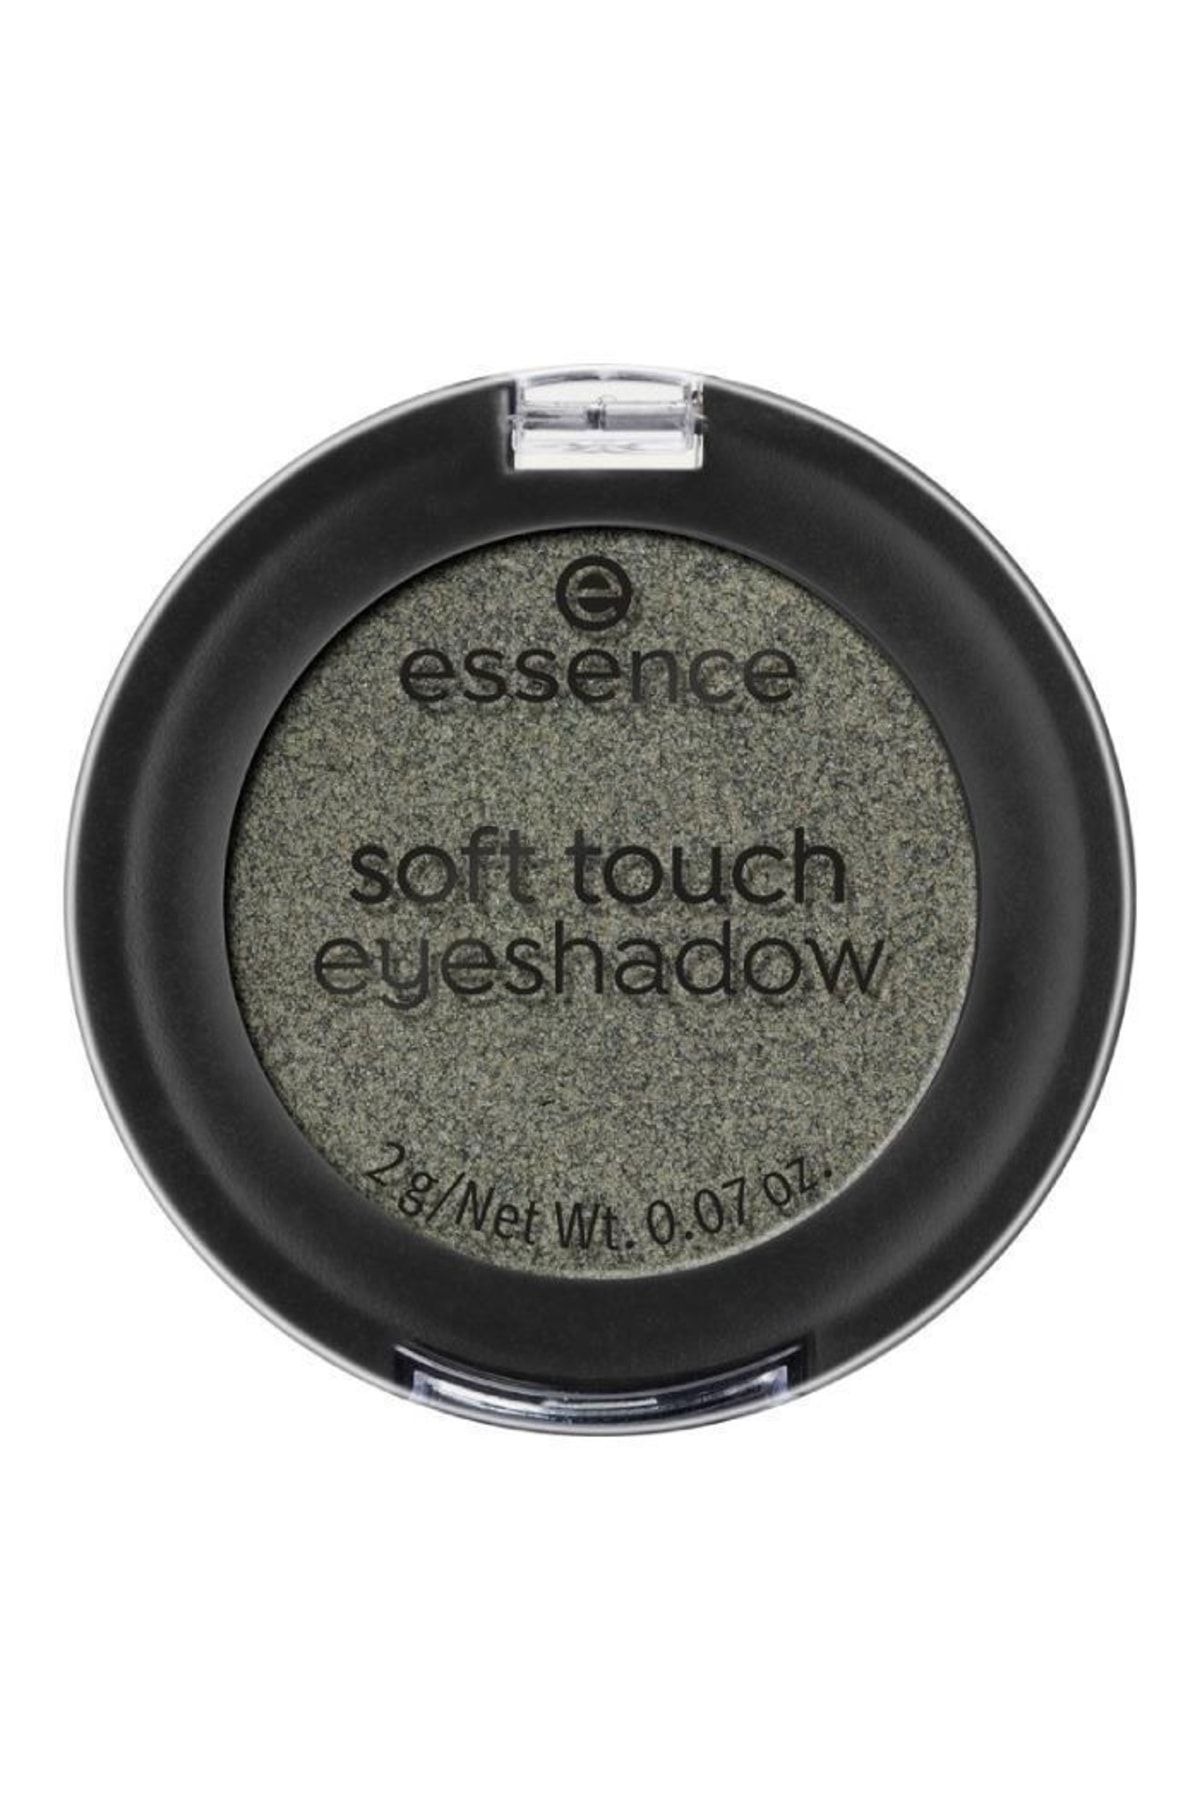 Essence Eyeshadow Soft Touch Göz Farı 05 Secret Woods